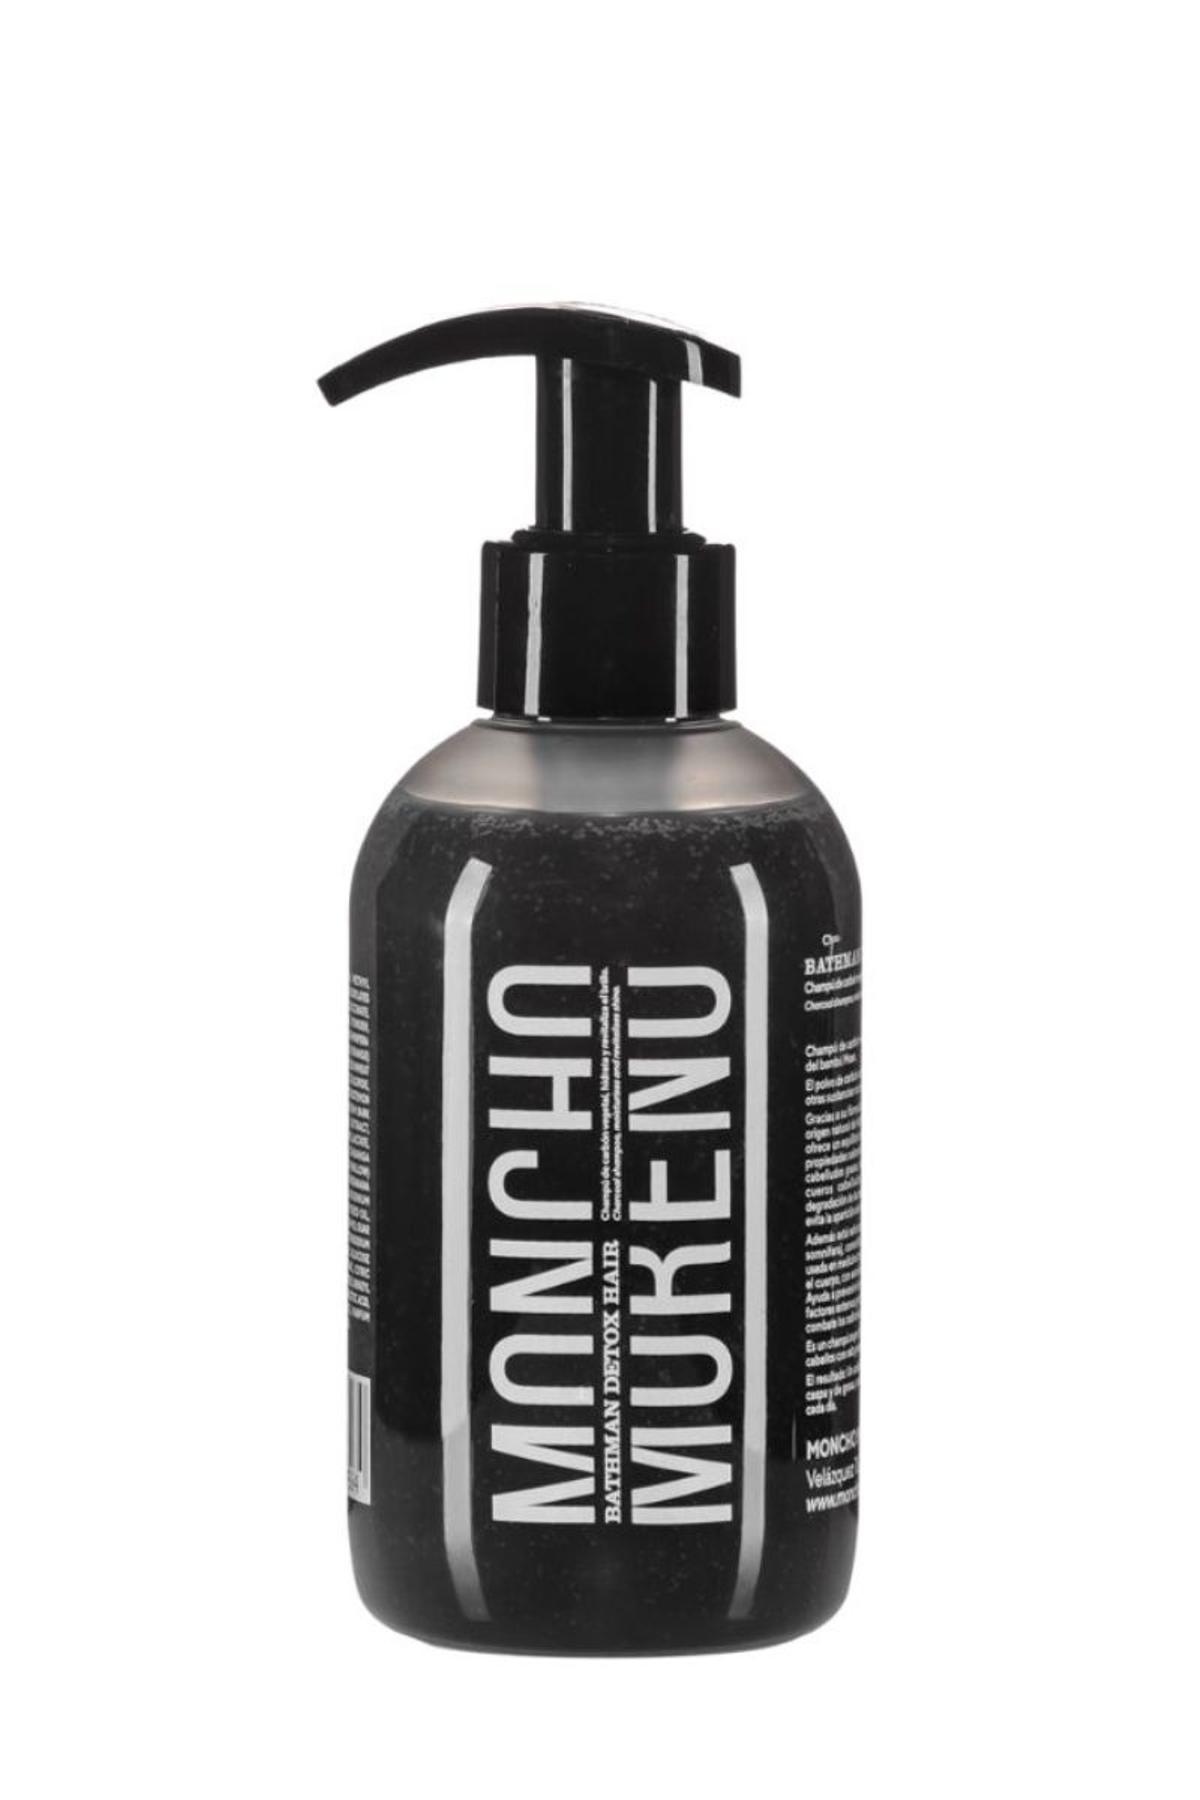 Premio Champú Detox: Bathman Detox Hair, de Moncho Moreno